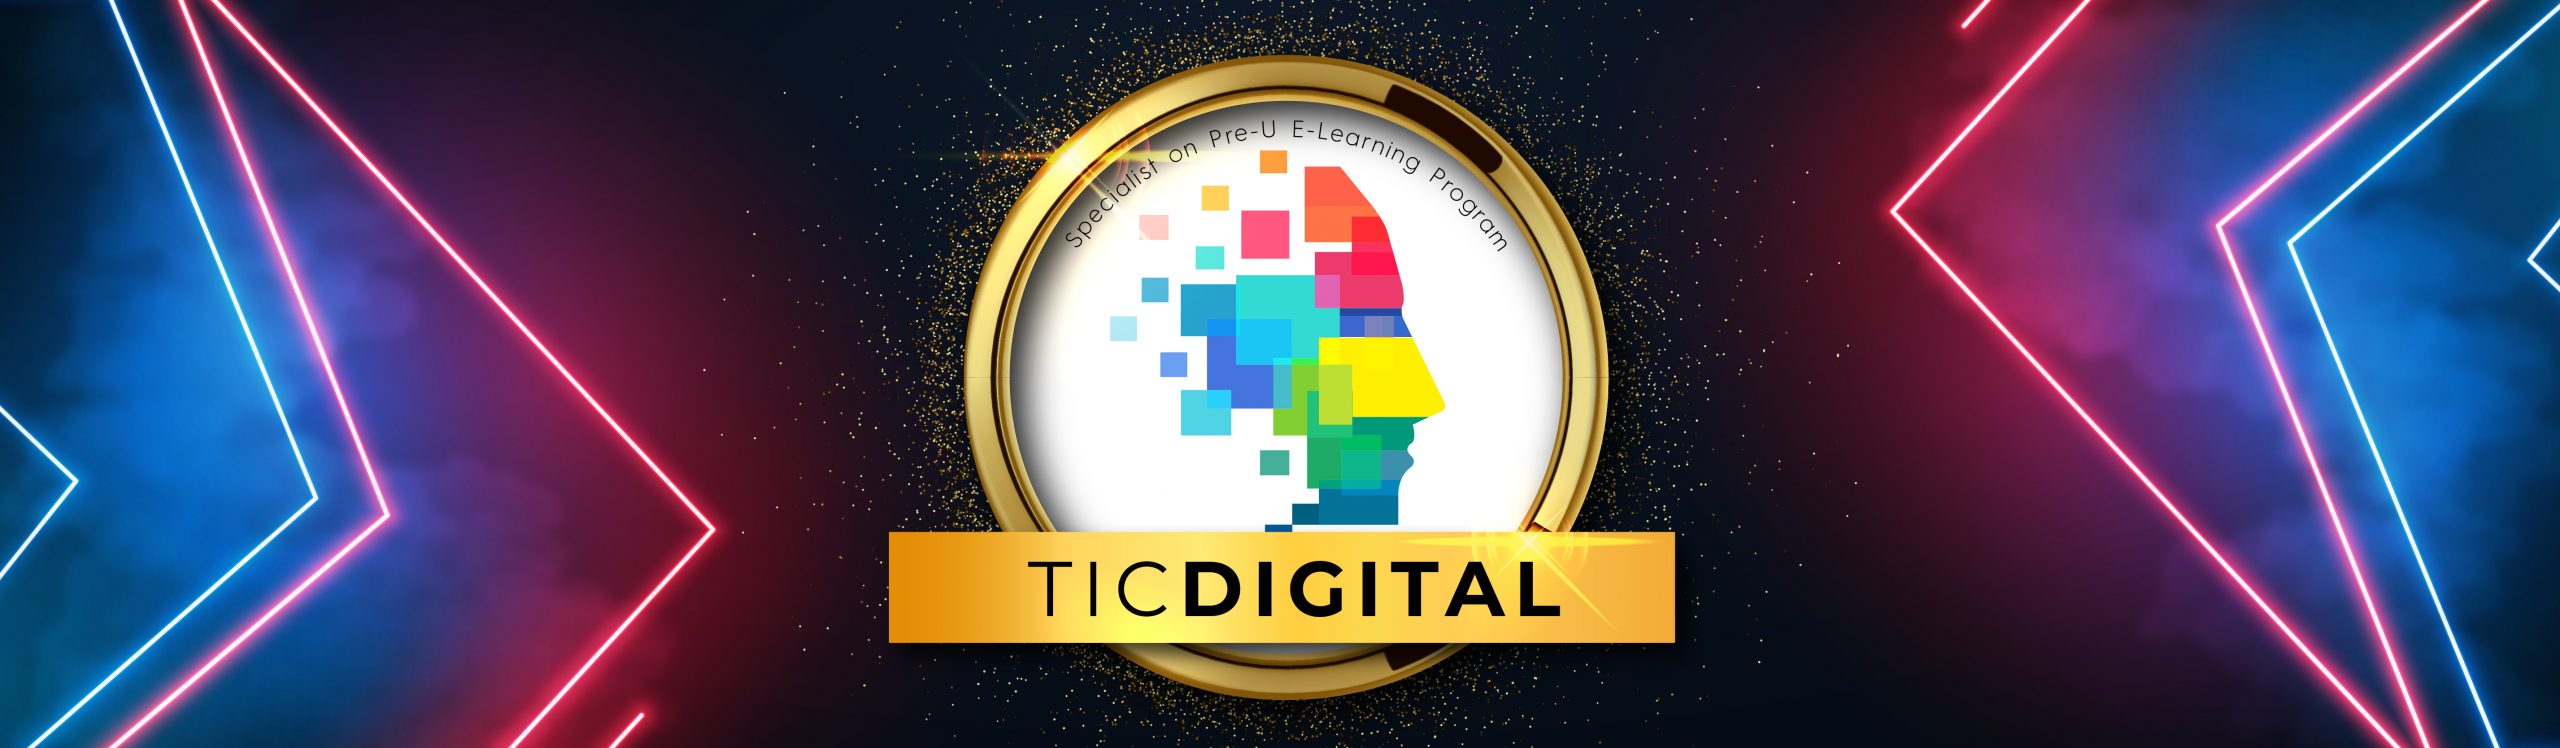 TIC Digital Circle